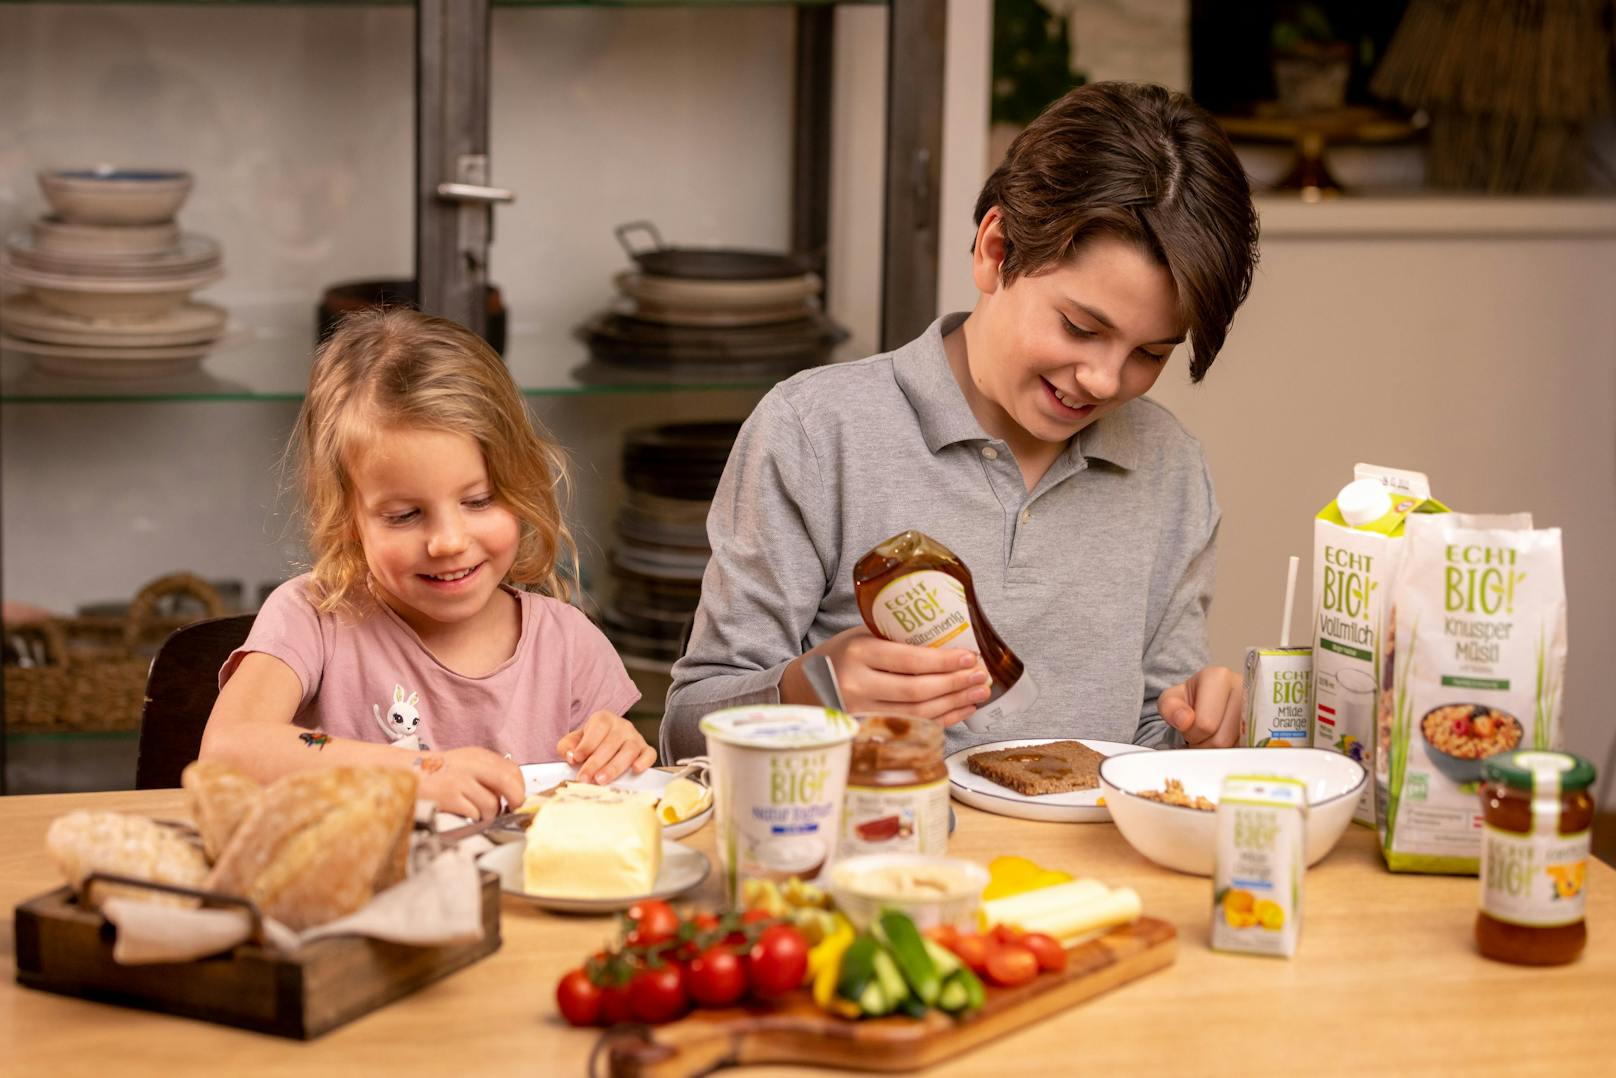 Mit der Eigenmarke "ECHT BIO!" bietet PENNY seinen Kund:innen eine große Auswahl an Produkten in Bio-Qualität – von Obst und Gemüse, über Genussprodukte wie Tee oder Müsli bis hin zu knusprigem Brot und Gebäck.